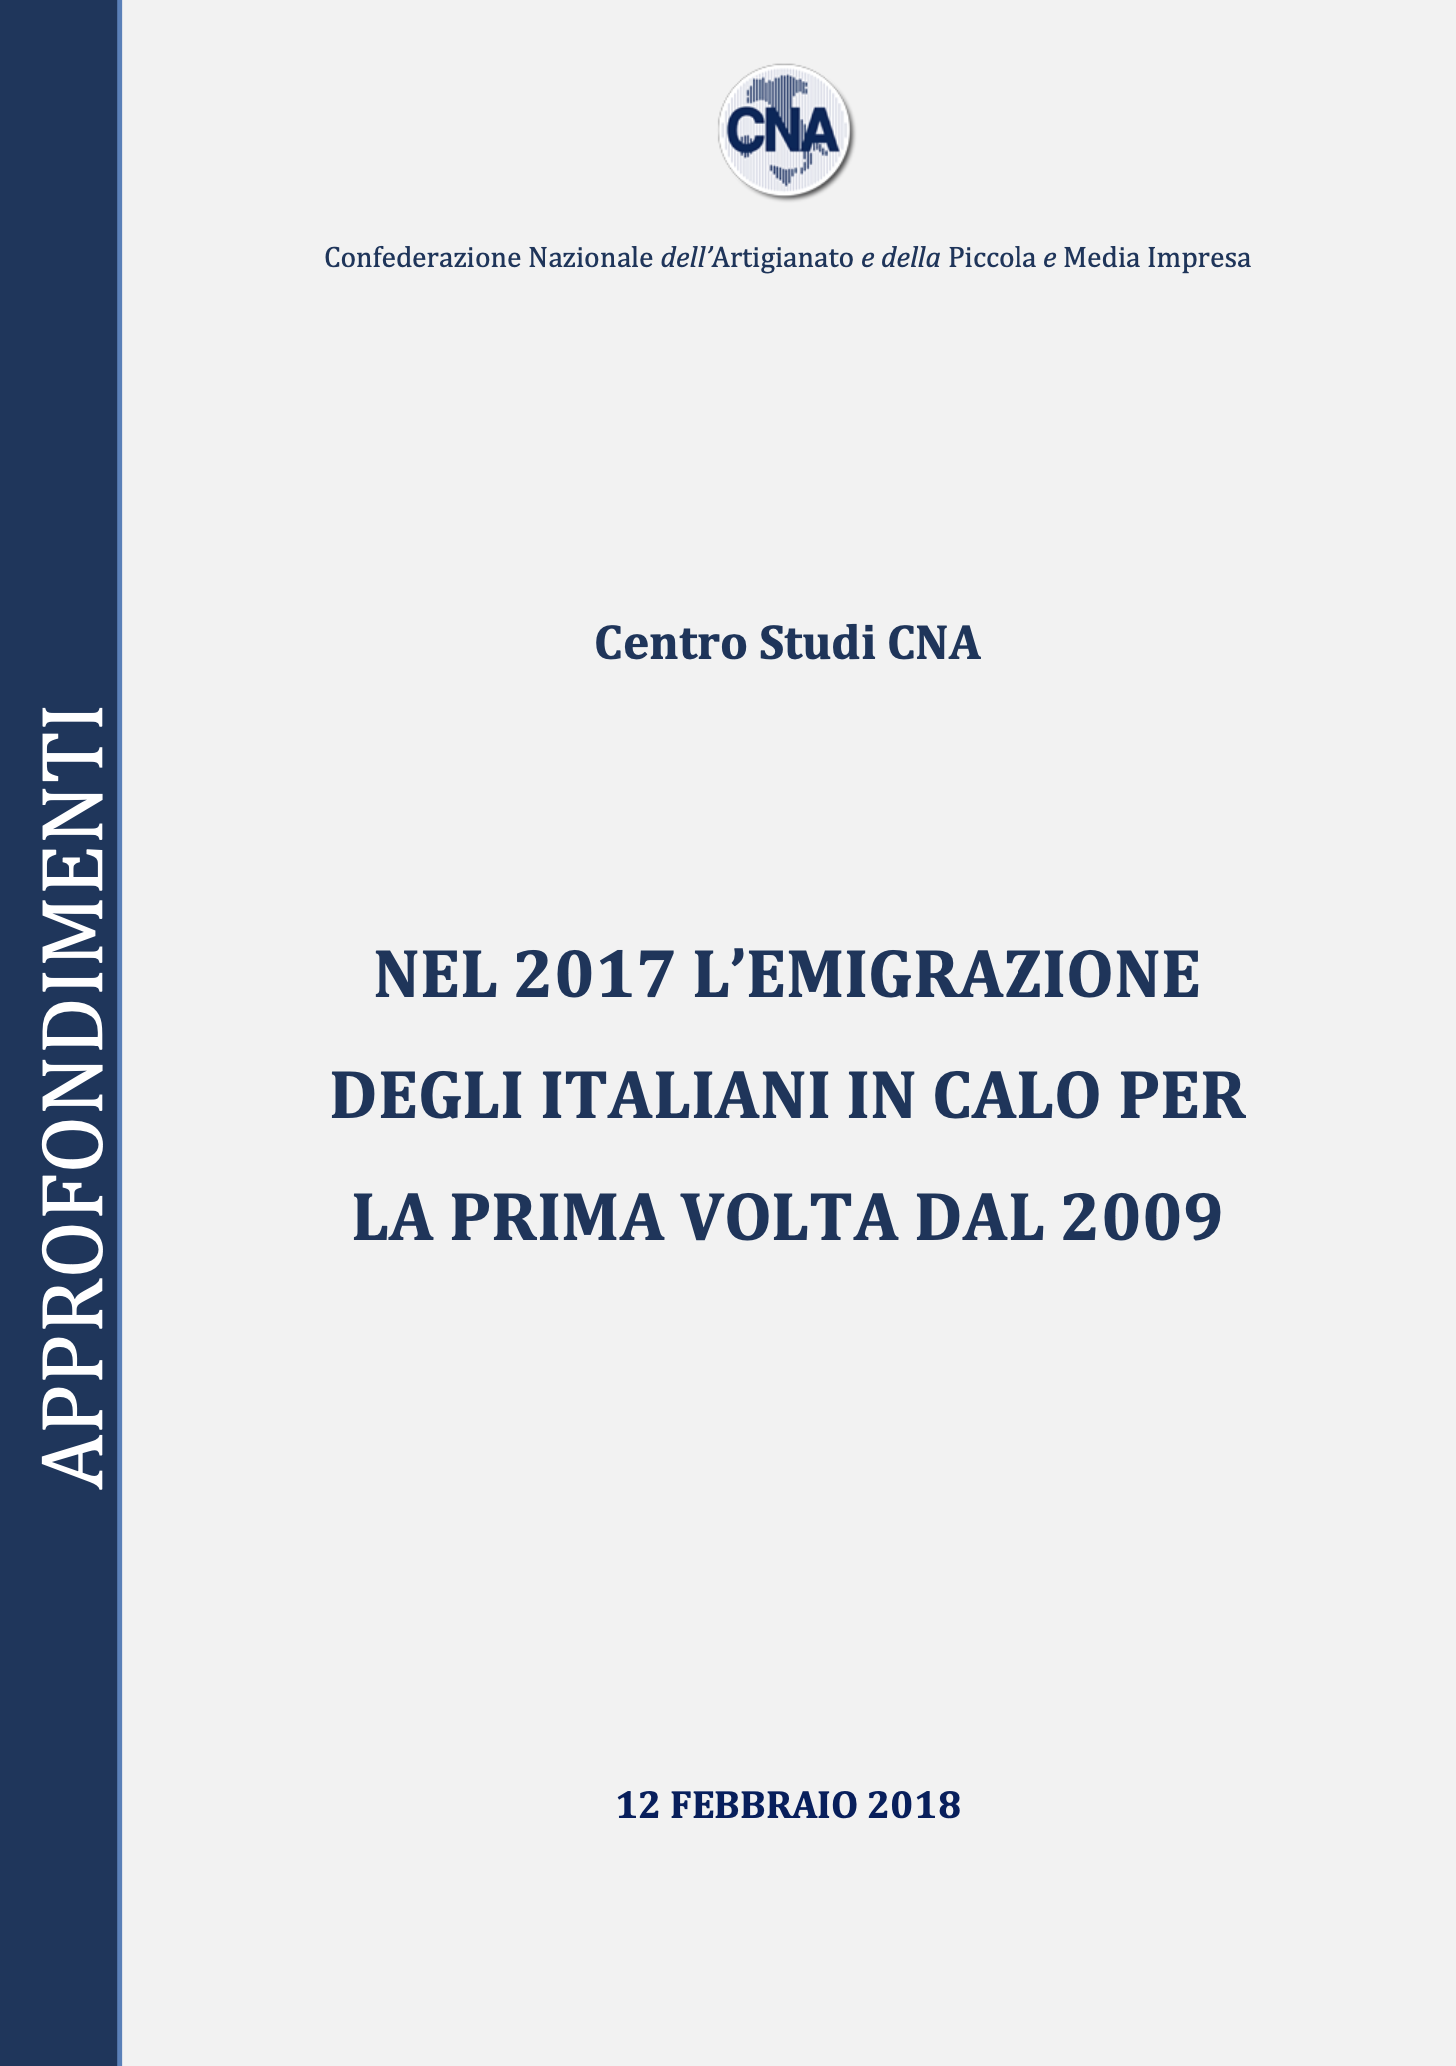 NEL 2017 L’EMIGRAZIONE DEGLI ITALIANI IN CALO PER LA PRIMA VOLTA DAL 2009